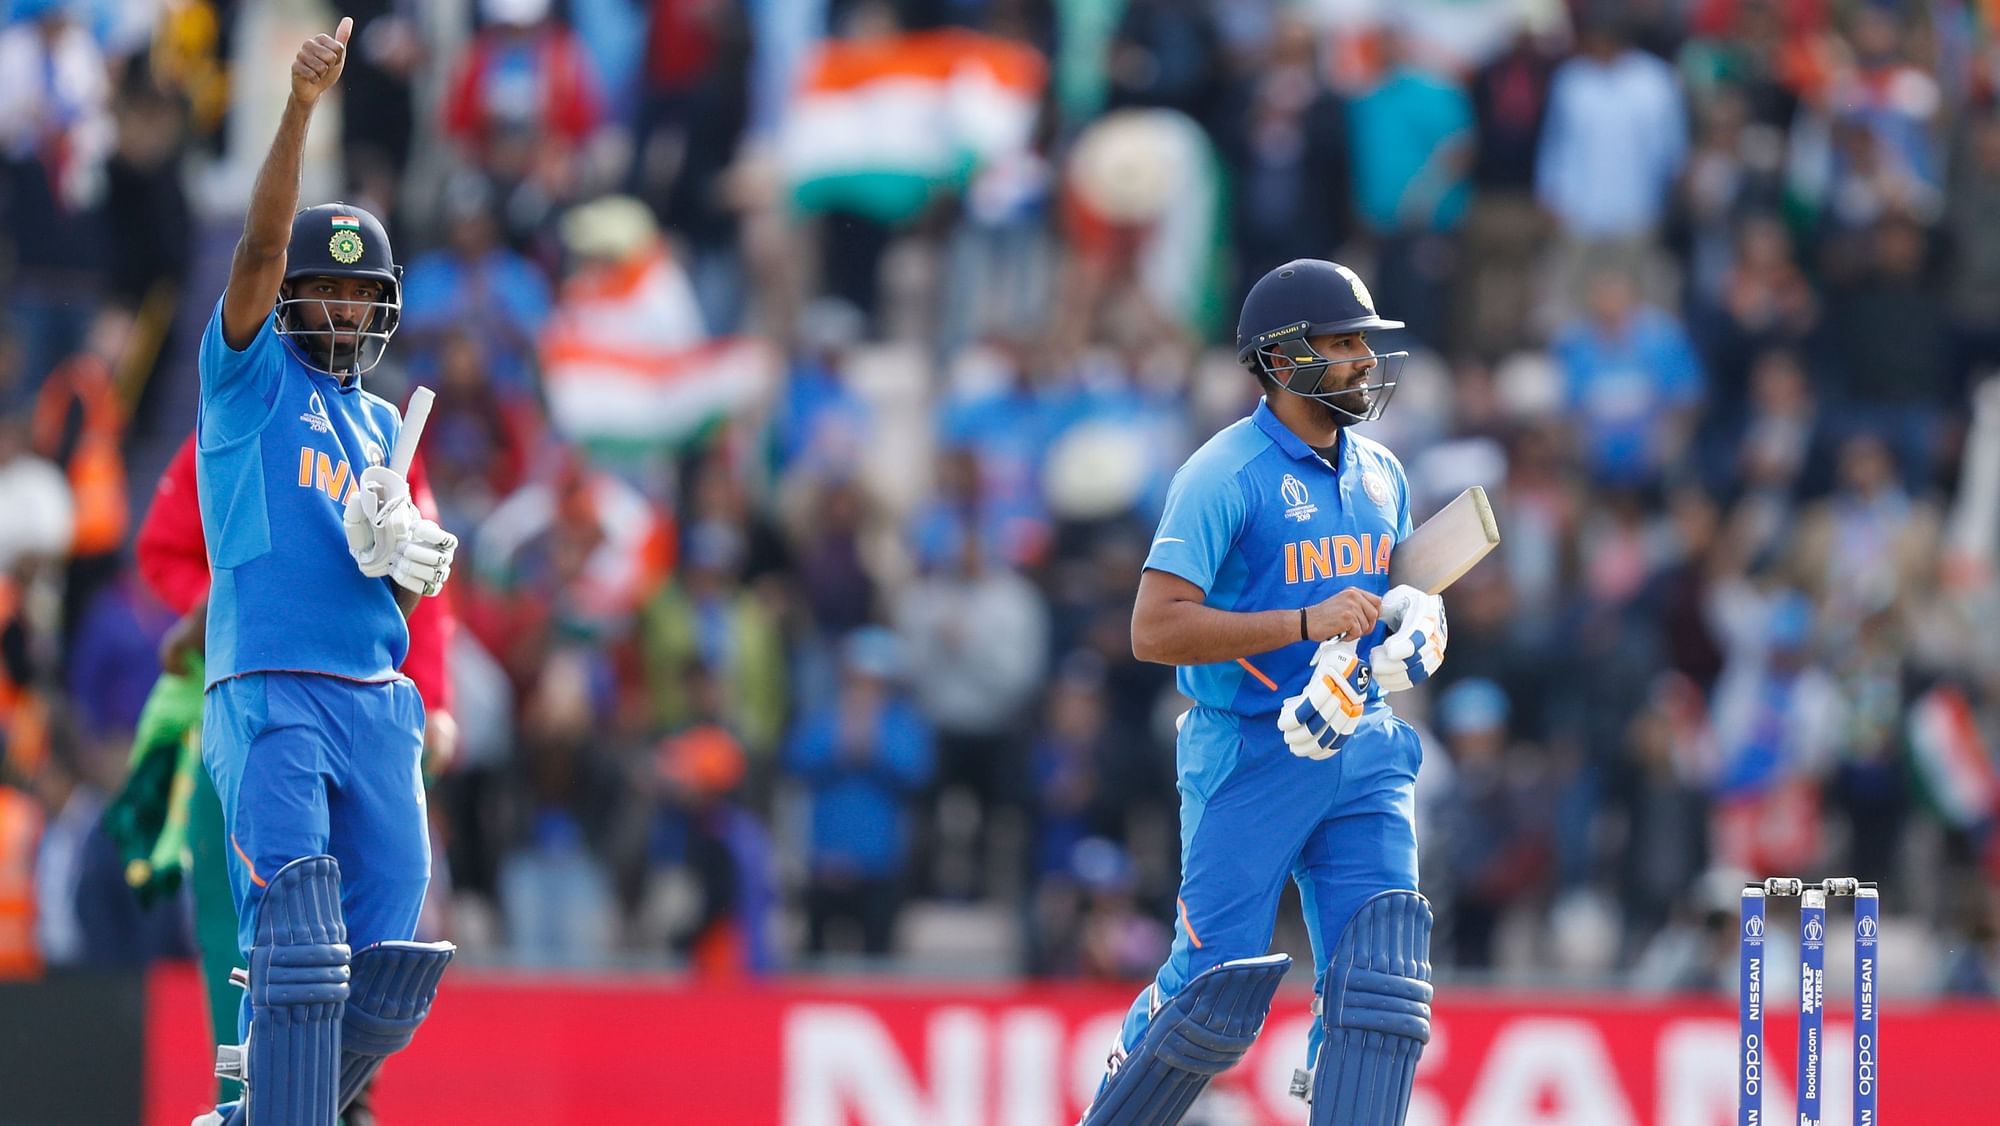 India vs SA Live Score, Cricket World Cup 2019 Live Score Updates